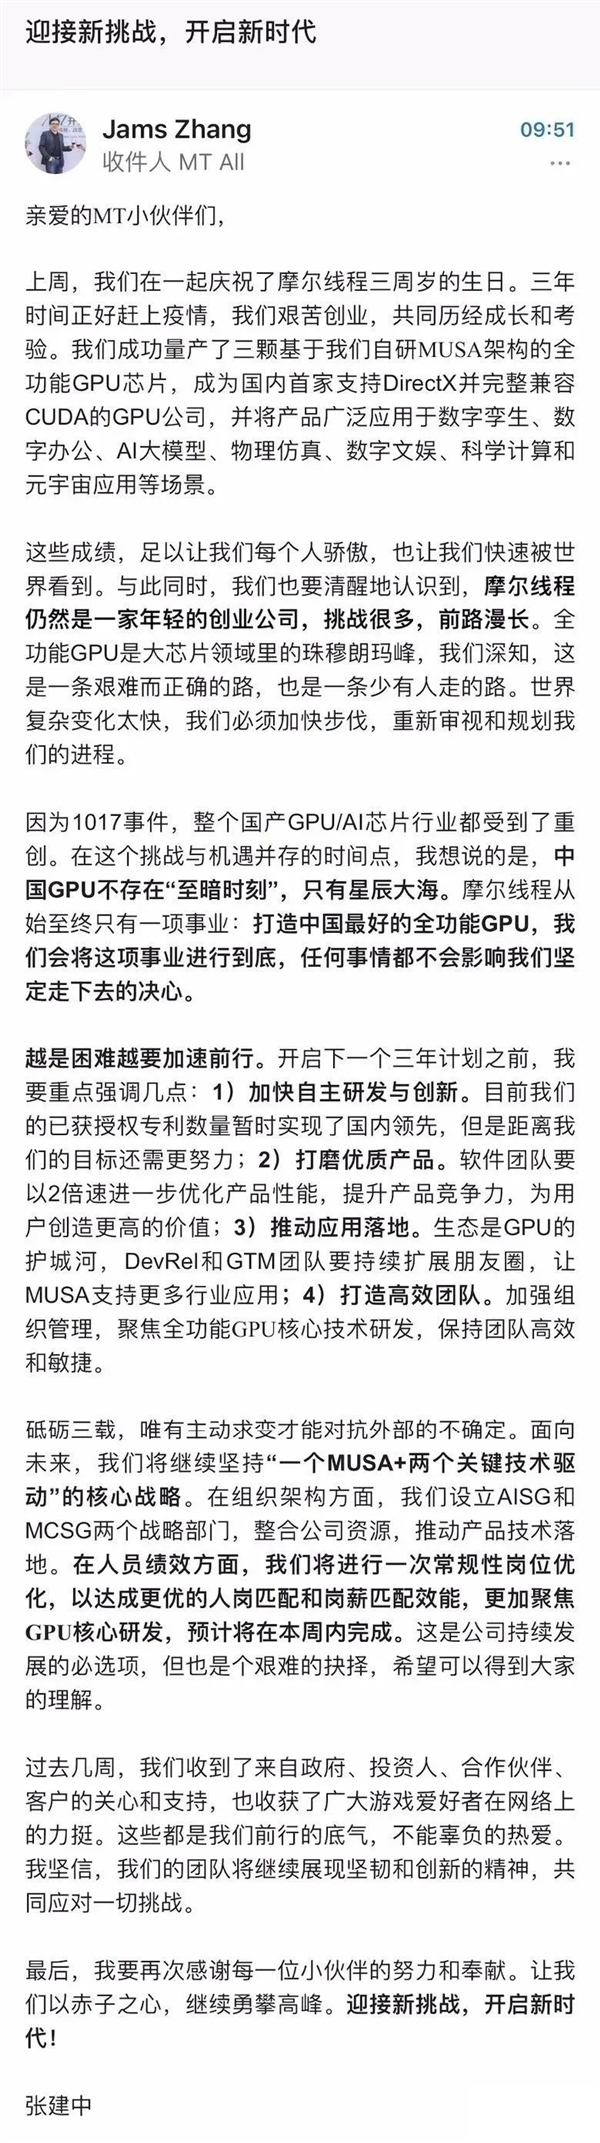 国产显卡大厂摩尔线程CEO张建中内部信：中国GPU不存在至暗时刻